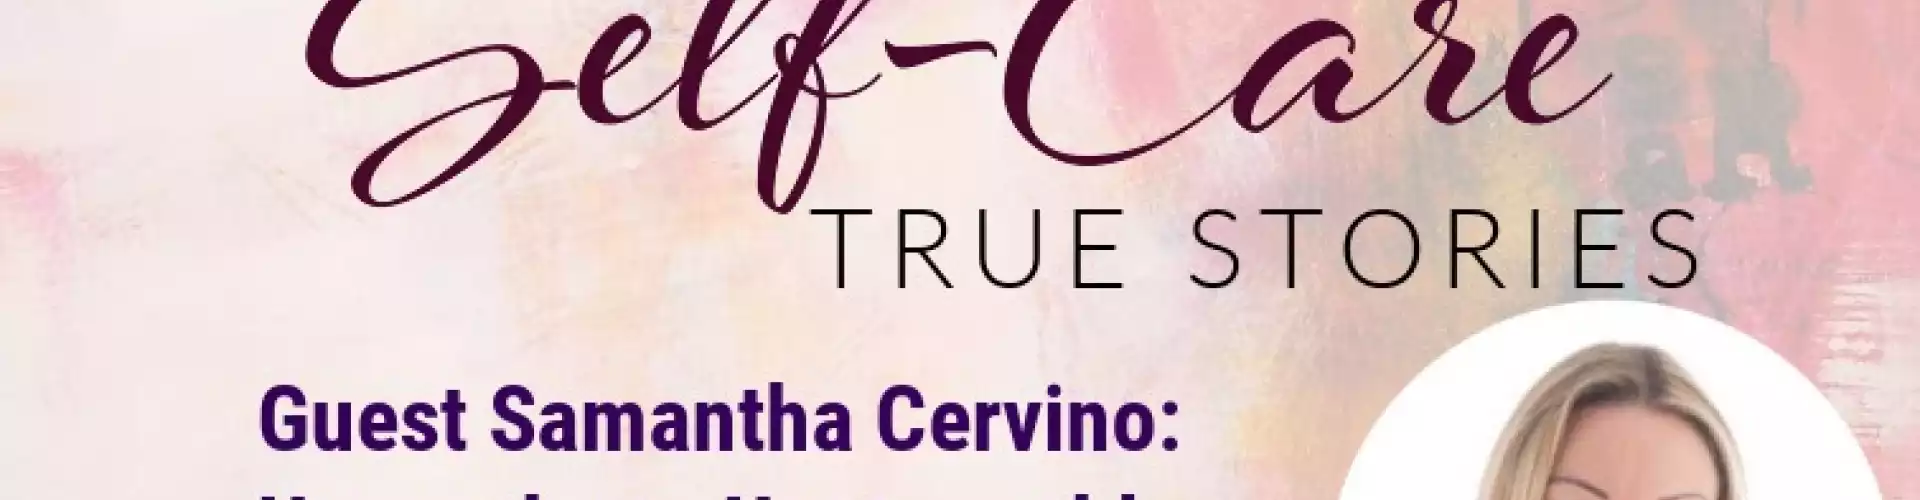 Historias reales de autocuidado con la invitada Samantha Cervino: indignas a imparables